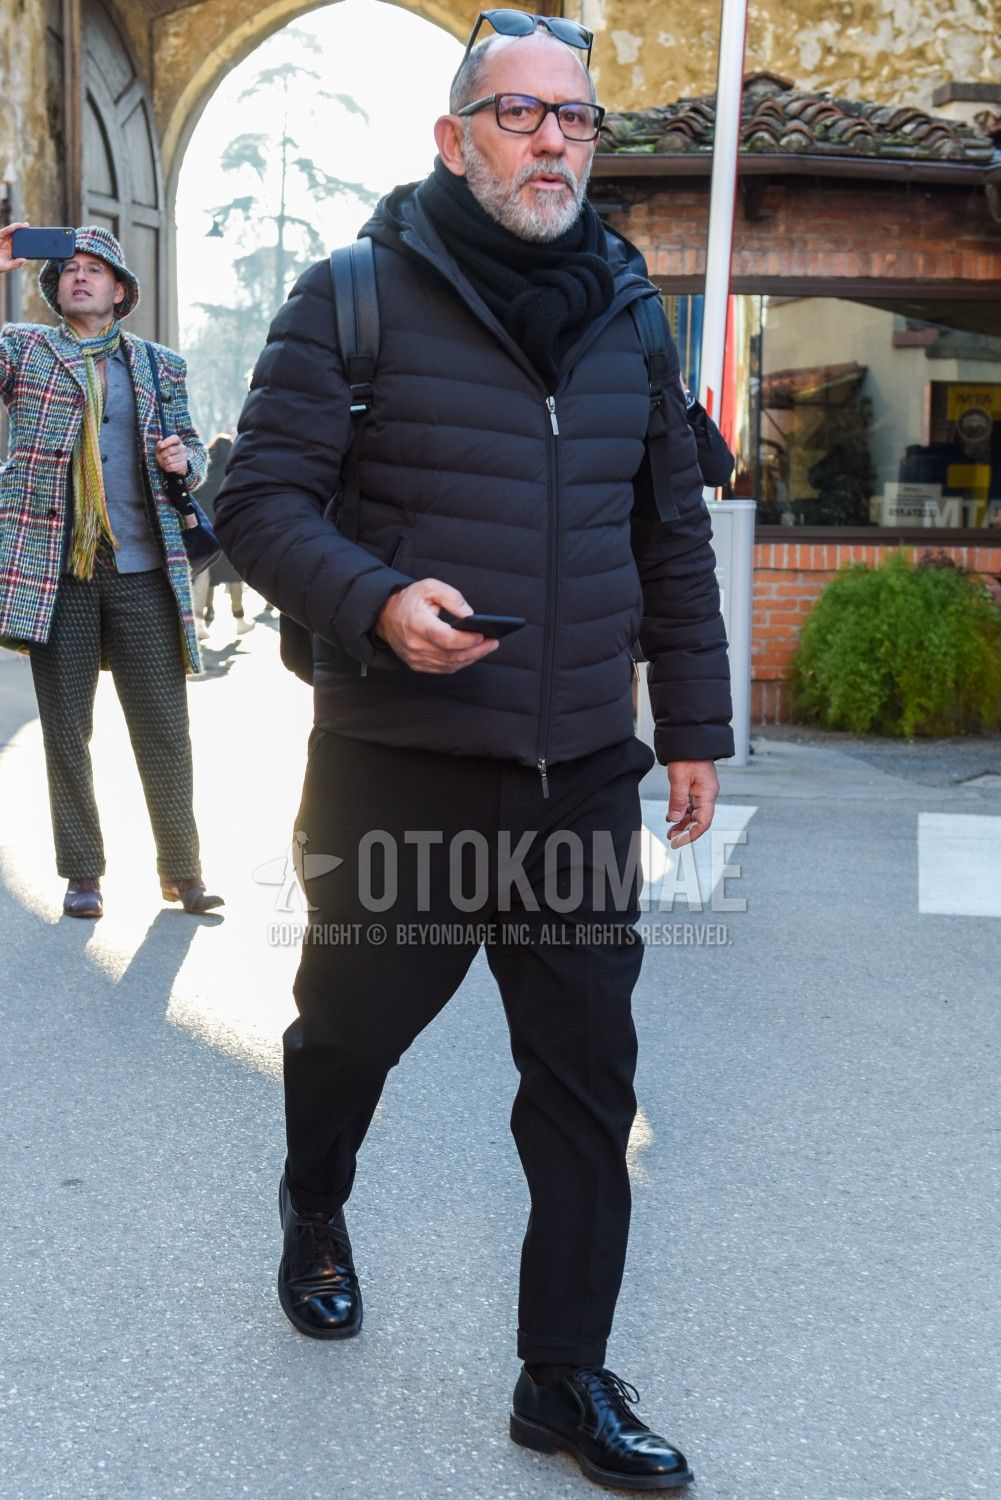 最高気温10度以下の日にはなにが必要 寒い日に必須な真冬の5アイテム メンズファッションメディア Otokomae 男前研究所